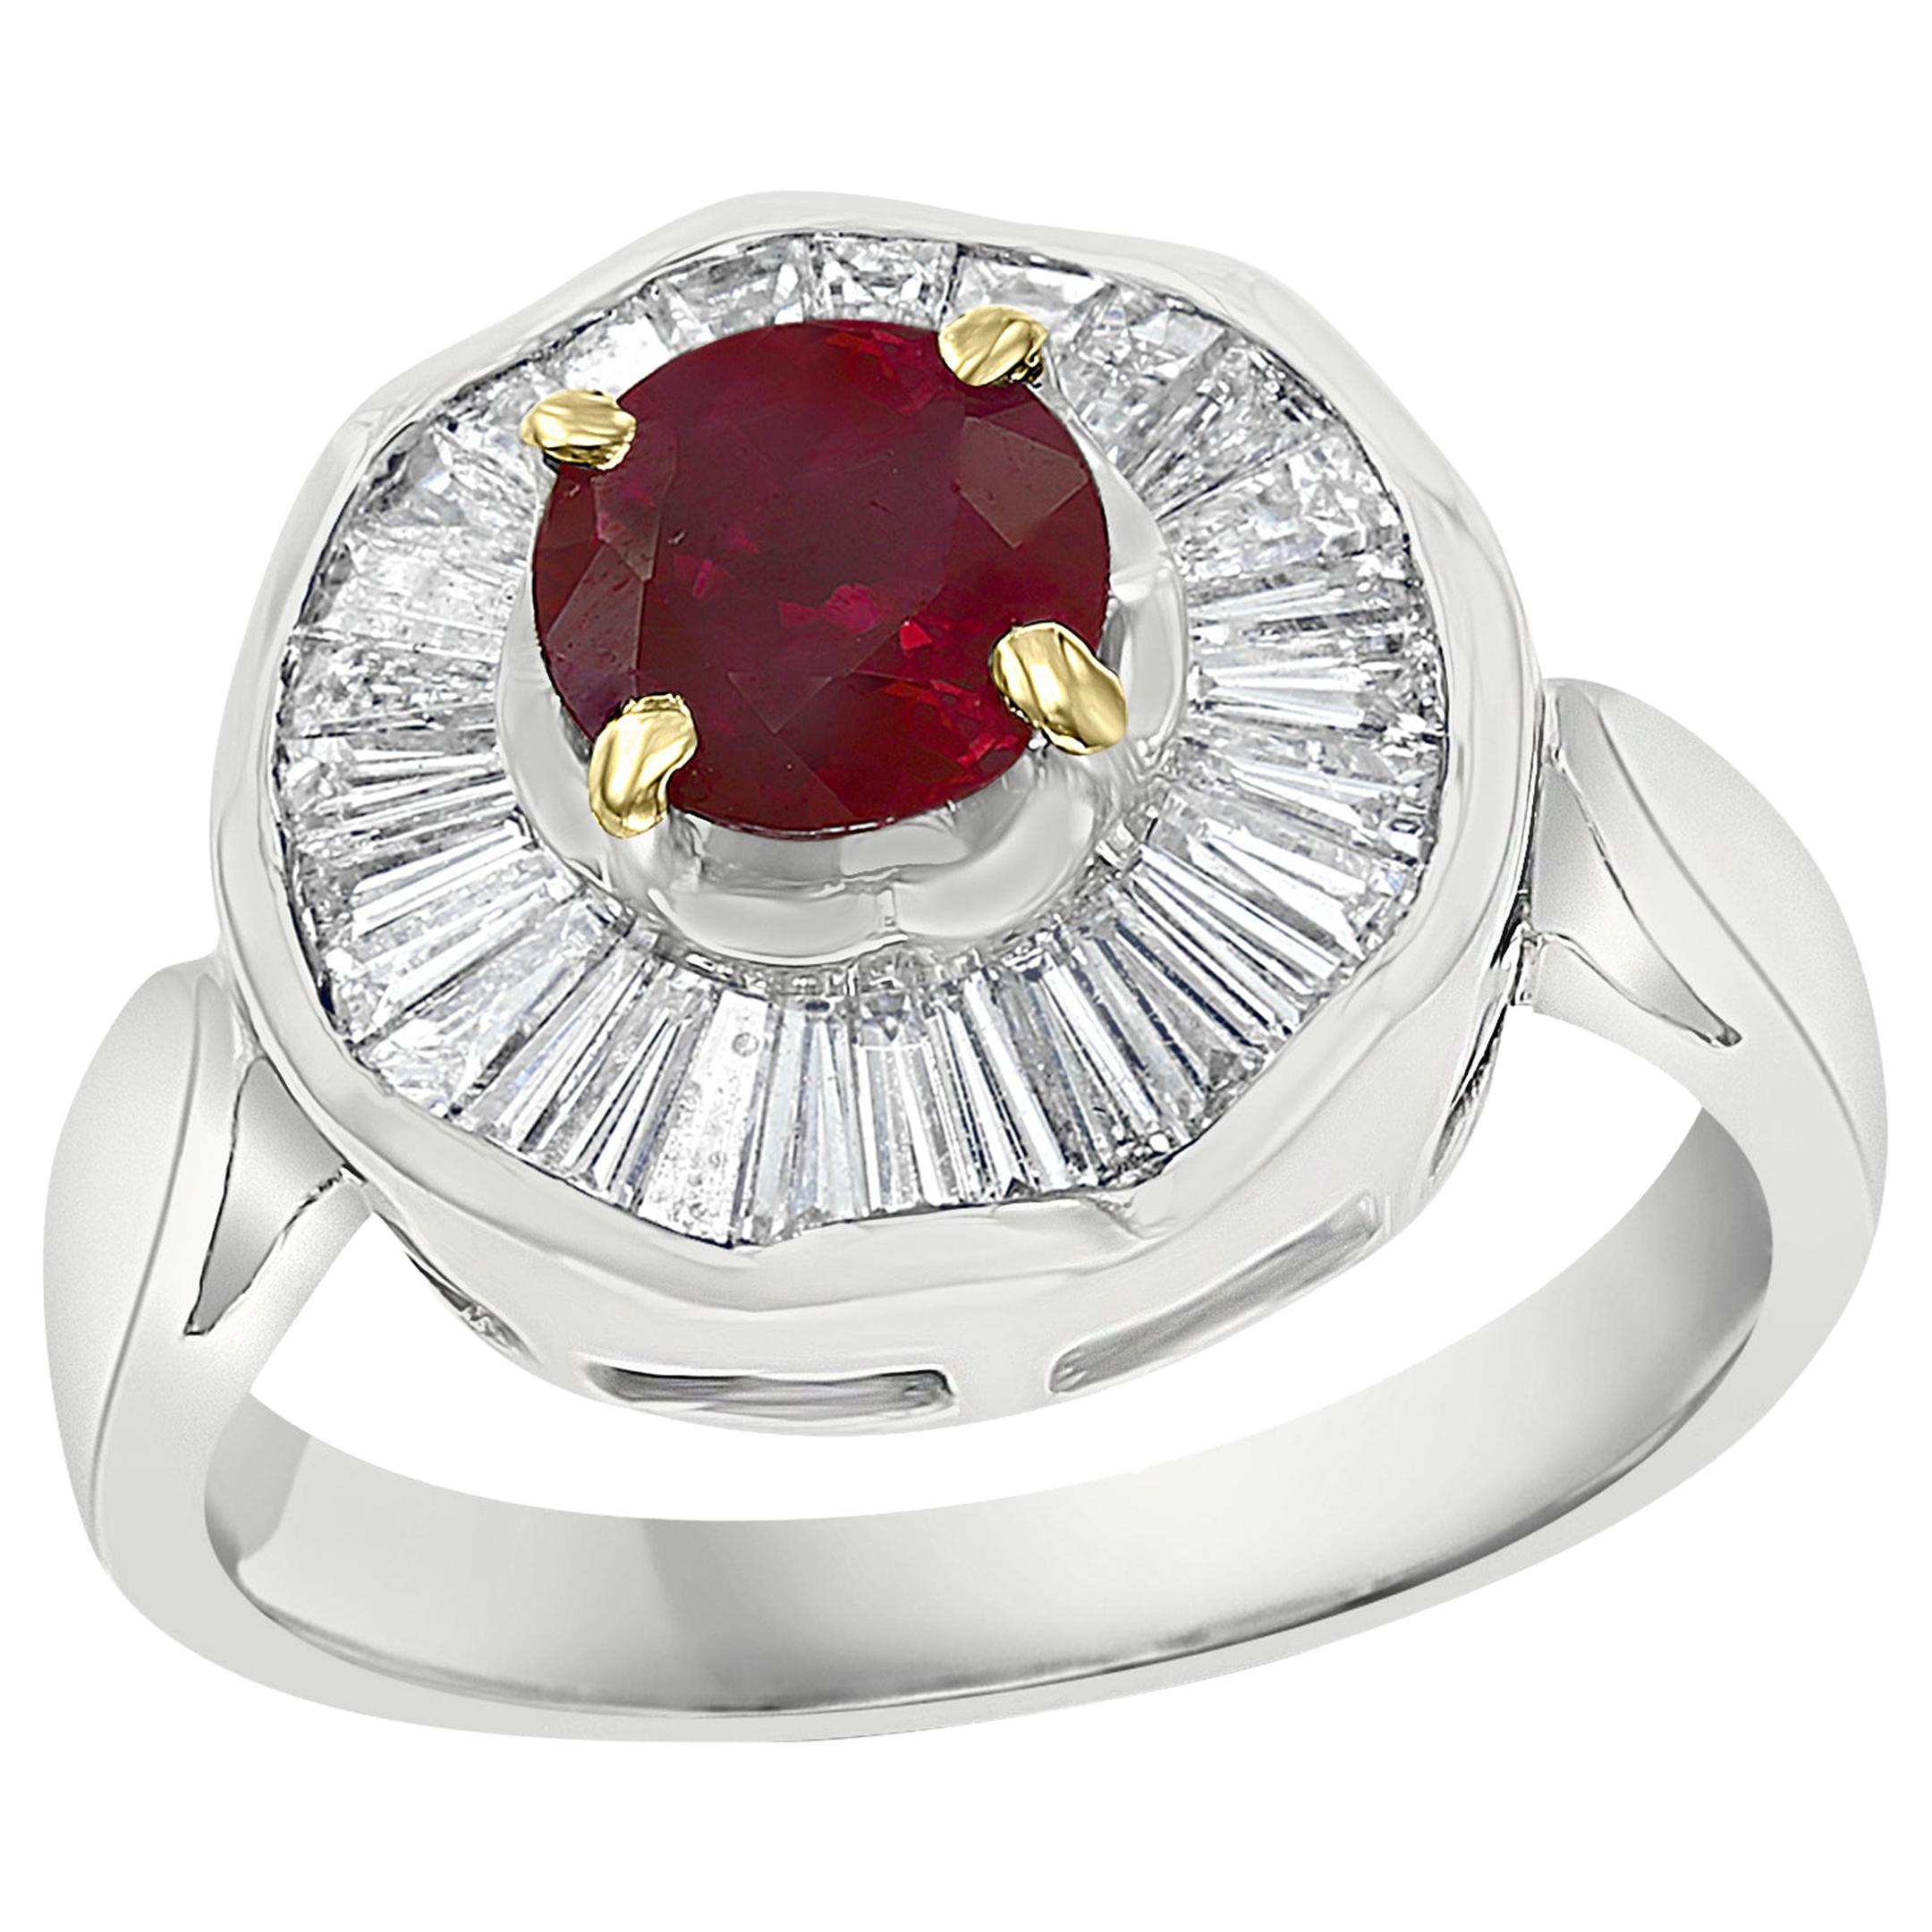 1 Carat Natural Burma Ruby and Baguette Diamond 18 Karat White Gold Ring